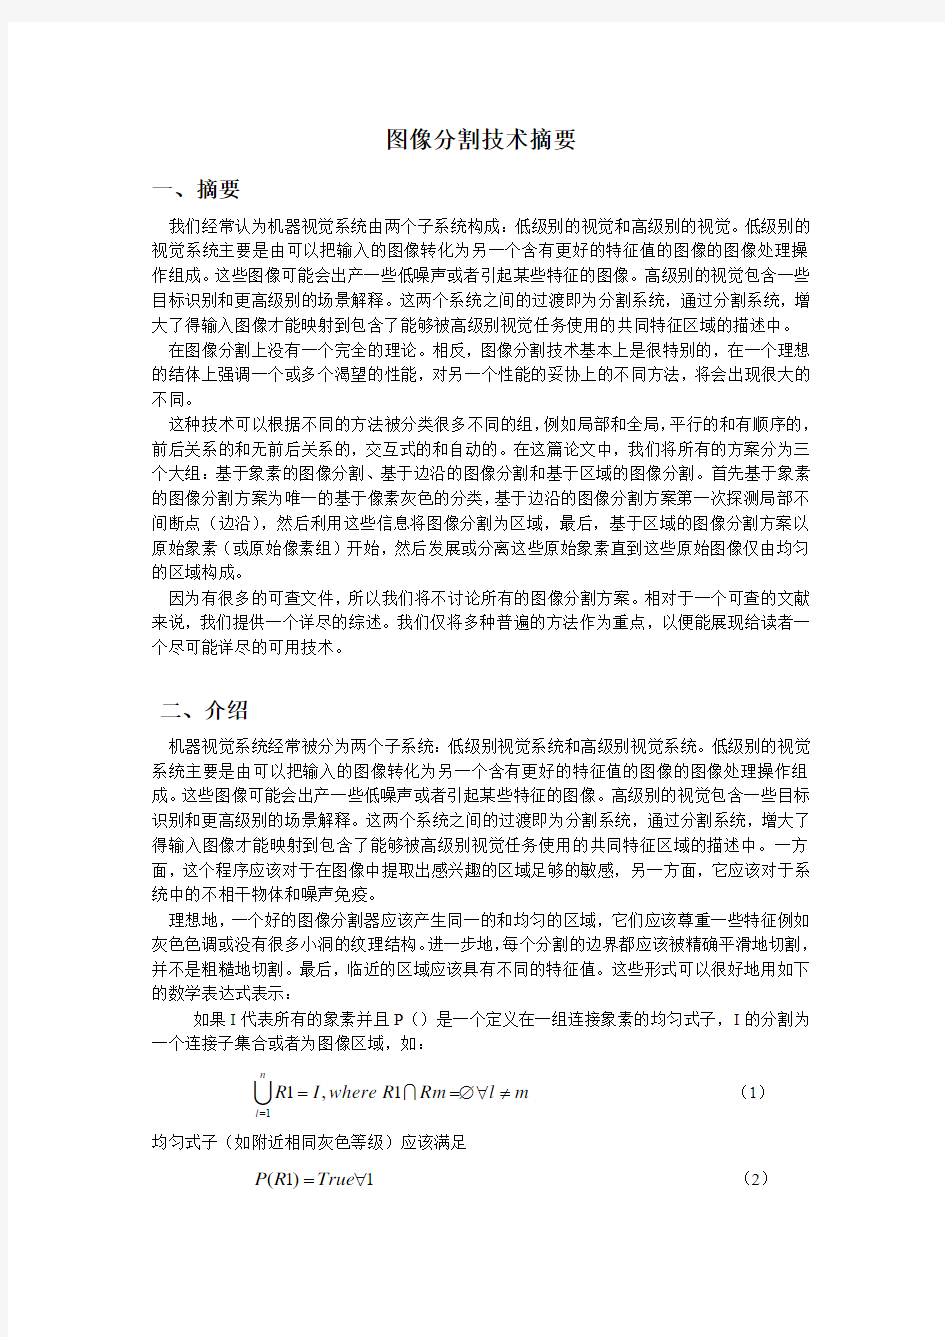 图像分割技术摘要(中文)